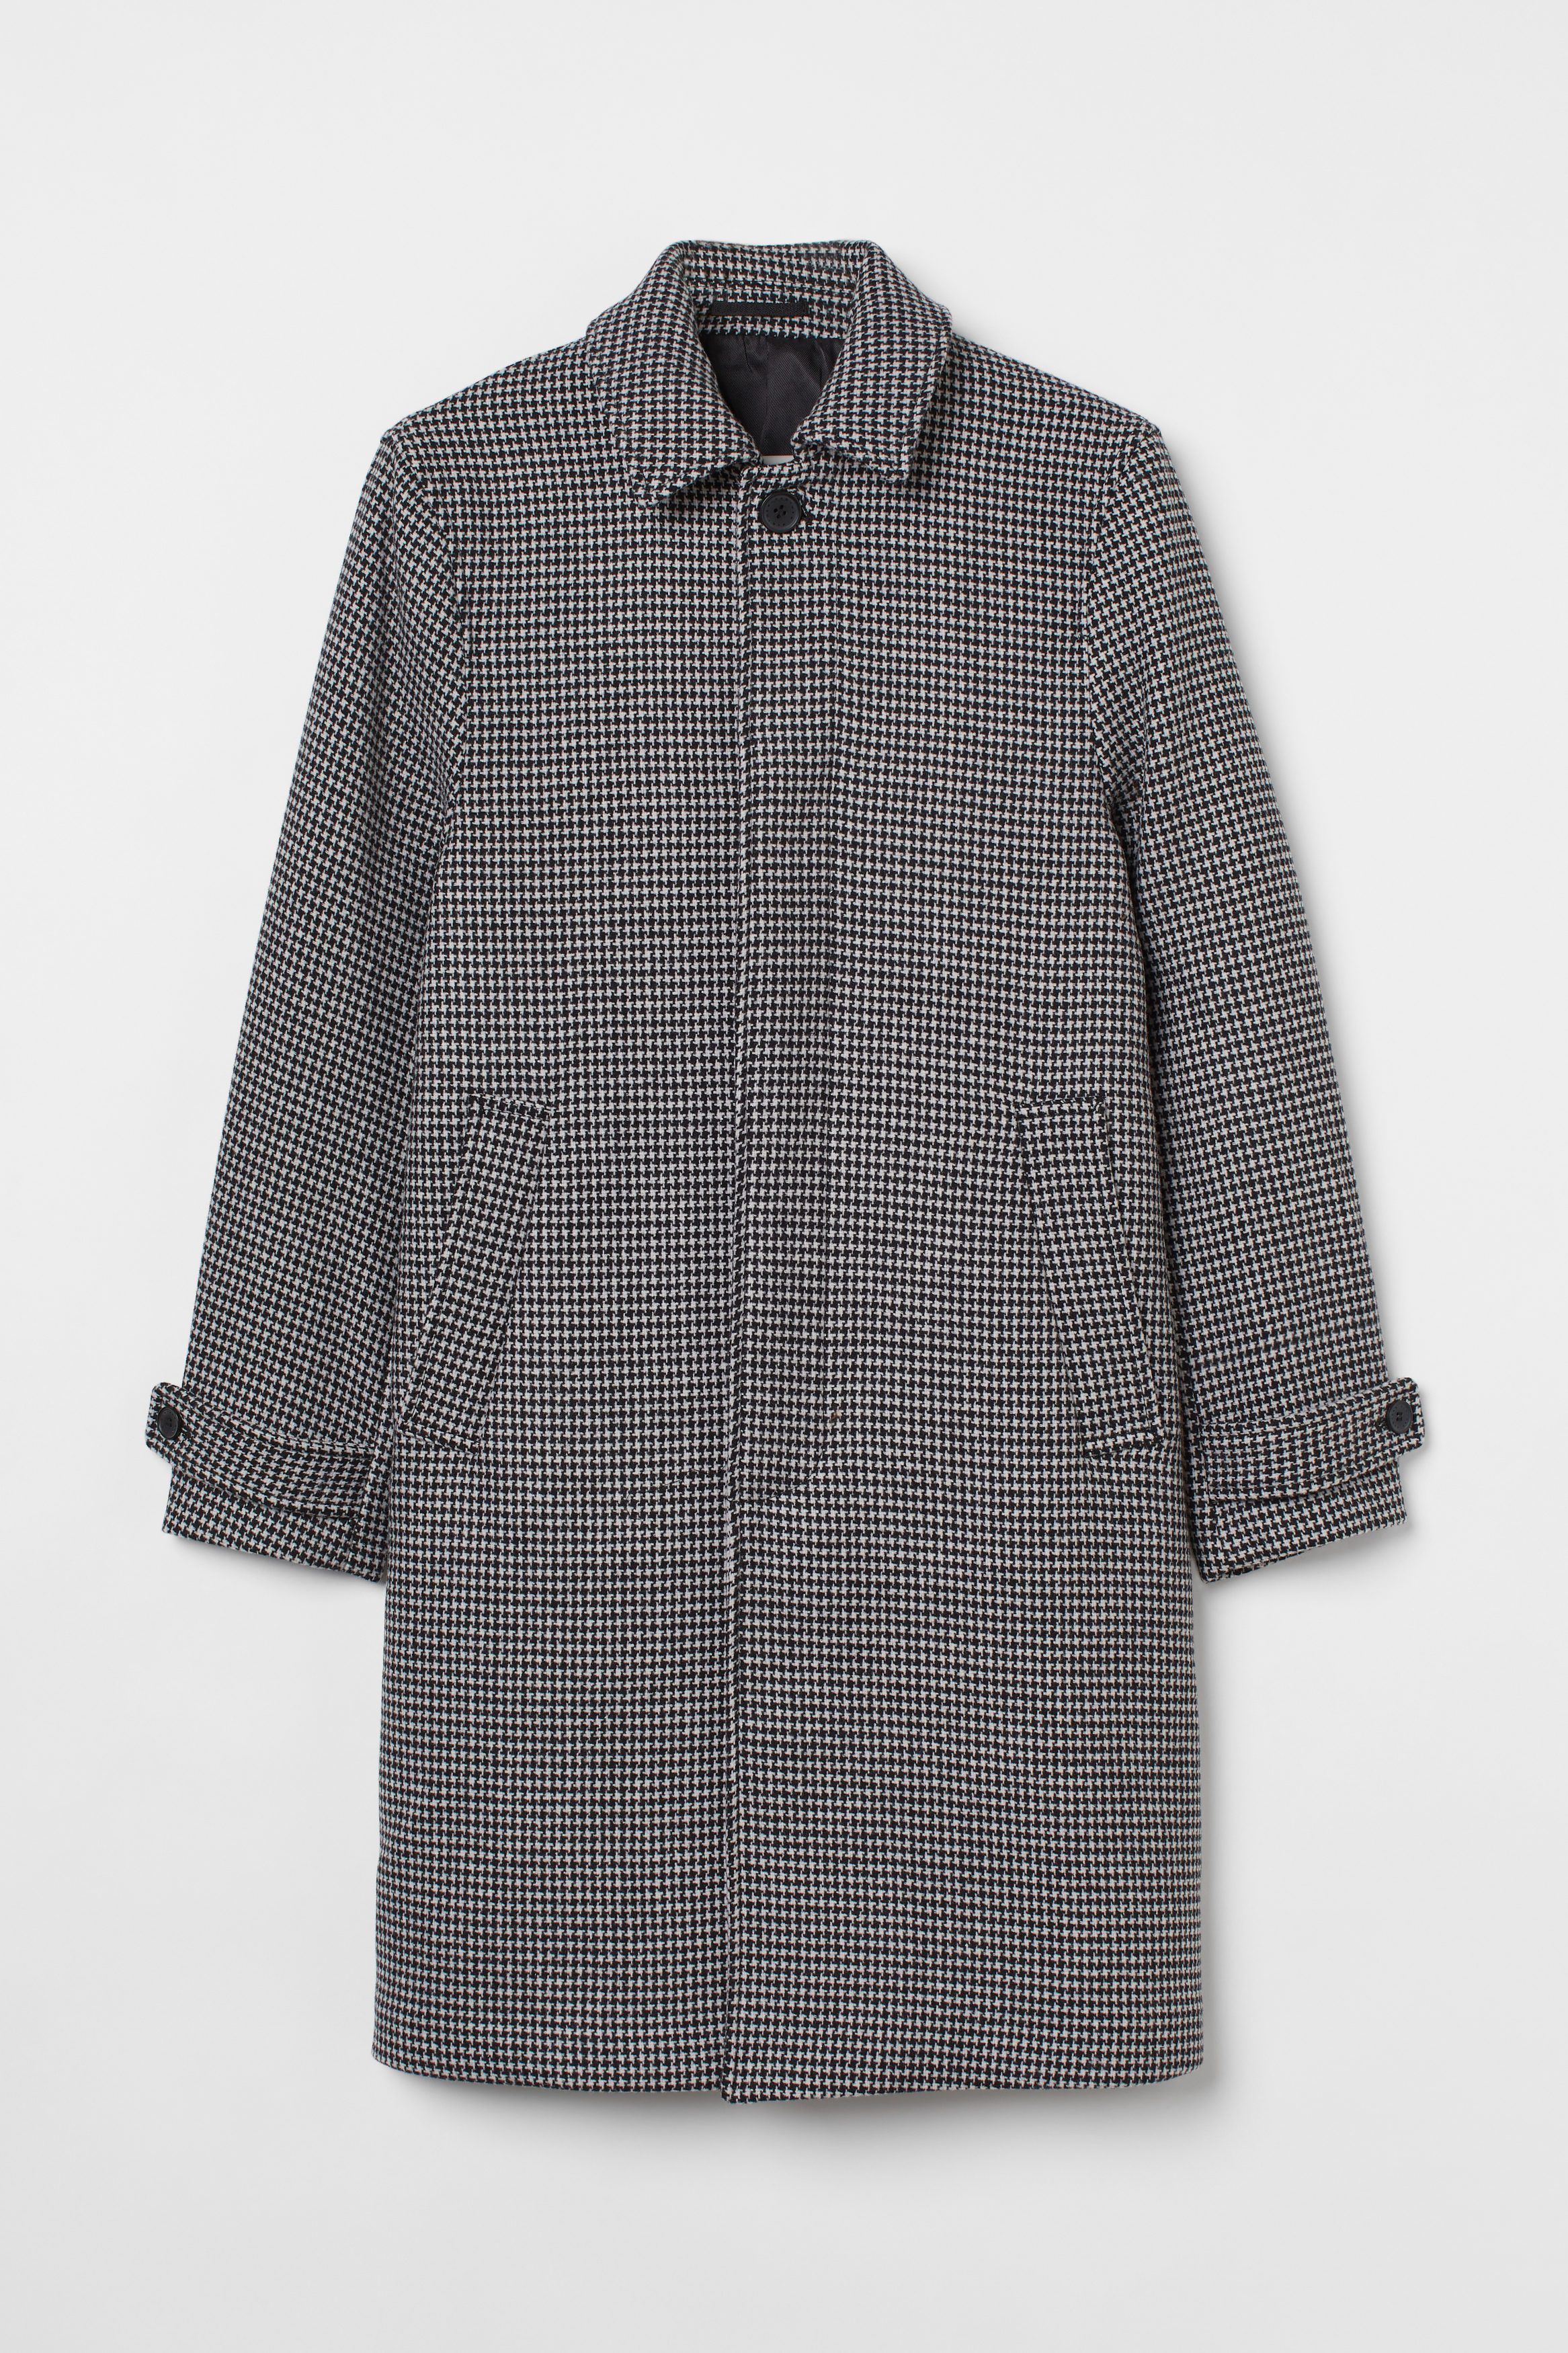 Billede af H&M Carcoat I Uldblanding Sort/pepitaternet, Frakker. Farve: Black/dogtooth-patterned størrelse 50